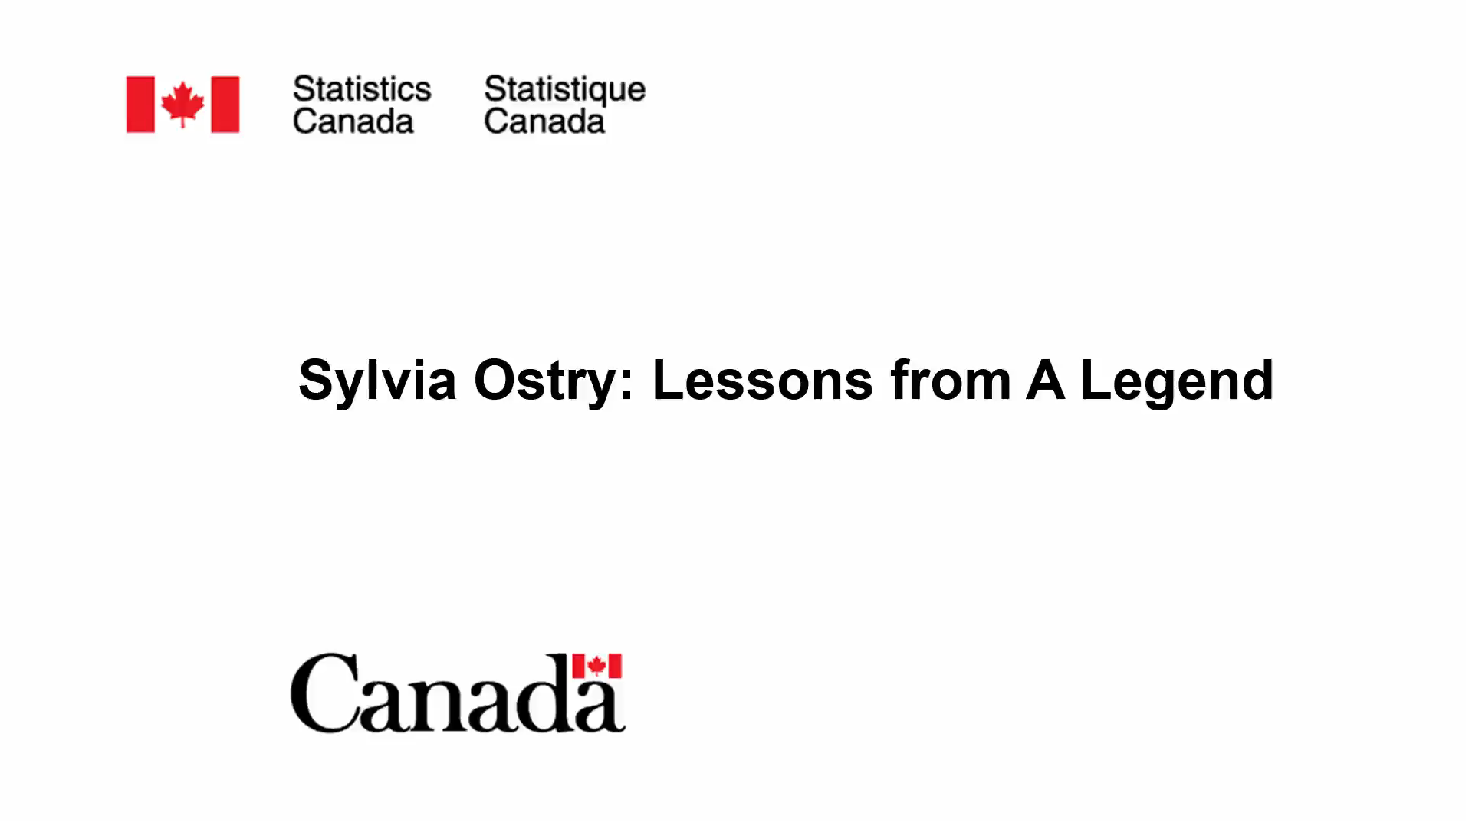 Sylvia Ostry : Les leçons d'une légende